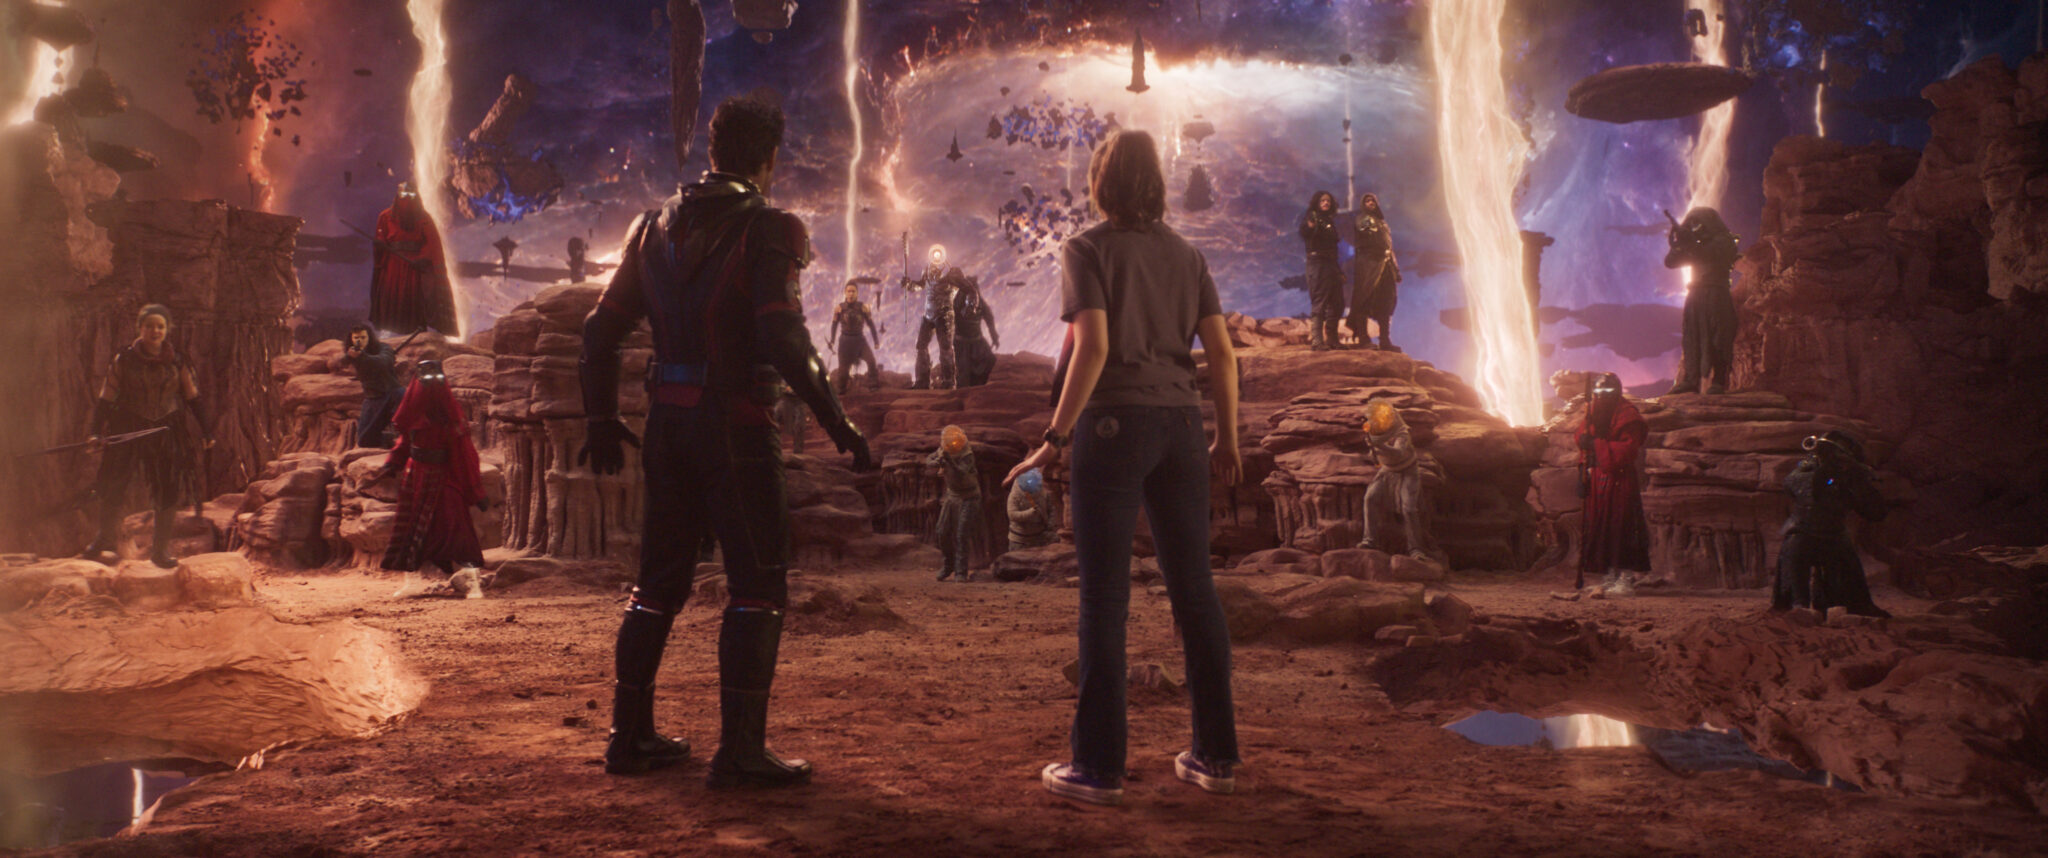 Paul Rudd Paul Rudd als Scott Lang/Ant-Man und Kathryn Newton als Cassandra "Cassie" Lang stehen auf einer wüstengleichen Planetenoberfläche während im Hintergrund viele Personen stehen und augenscheinlich warten.